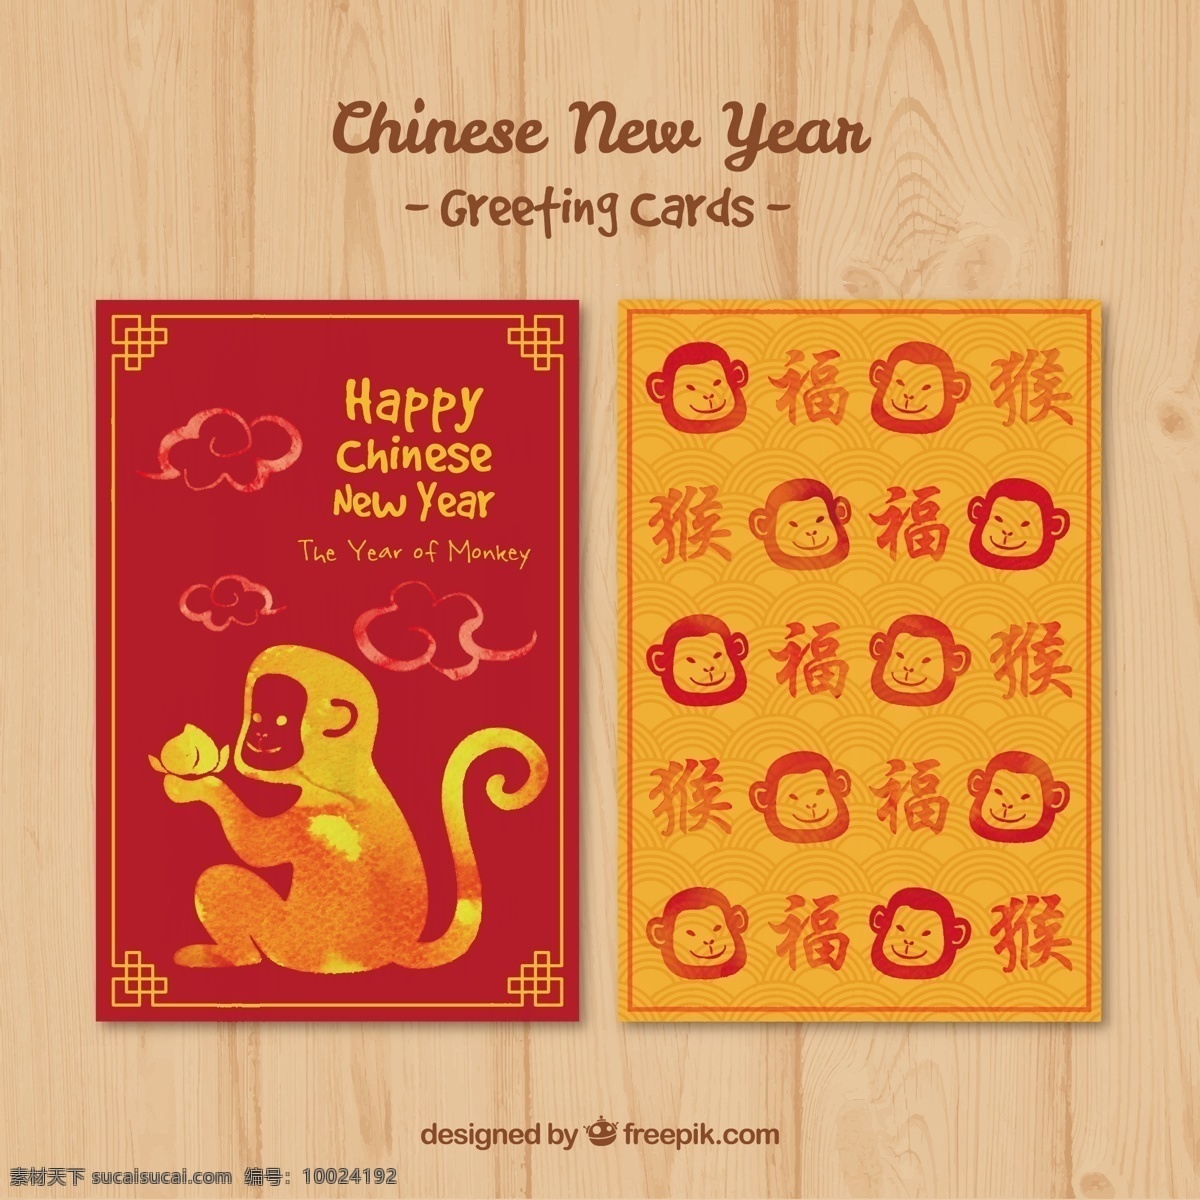 可爱 快乐 中国 新 年 猴 卡 派对 卡片 新的一年 动物 冬天 红色 扁平 猴子 庆祝 事件 节日 2016 平面设计 橙色